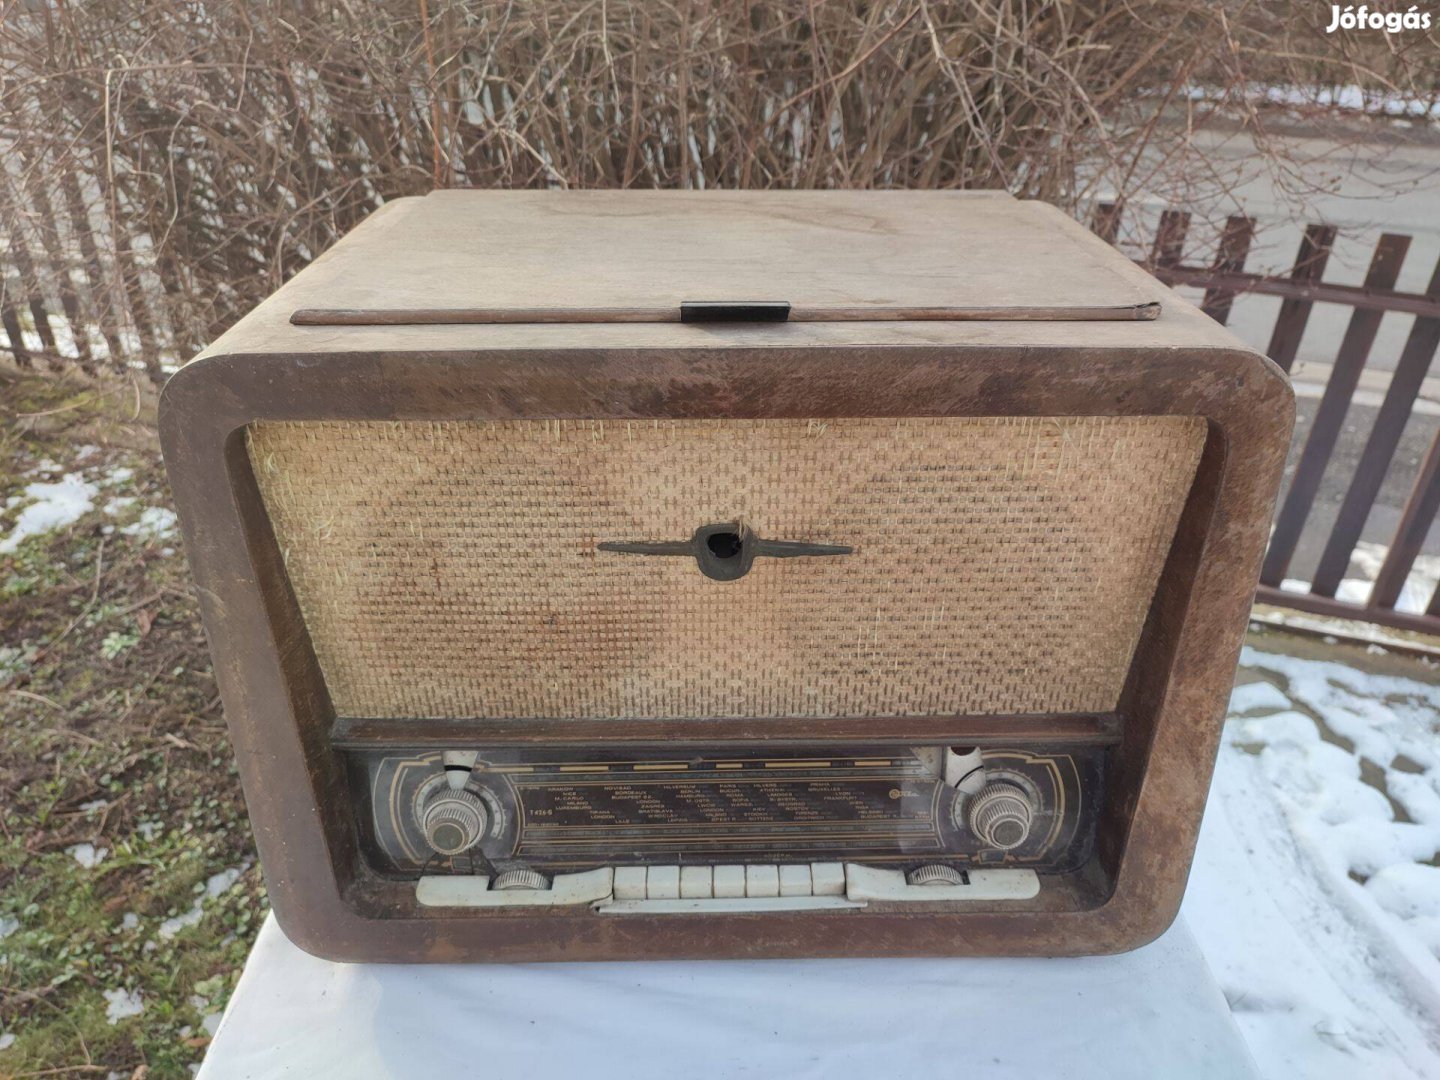 Terta T 426 G régi rádió